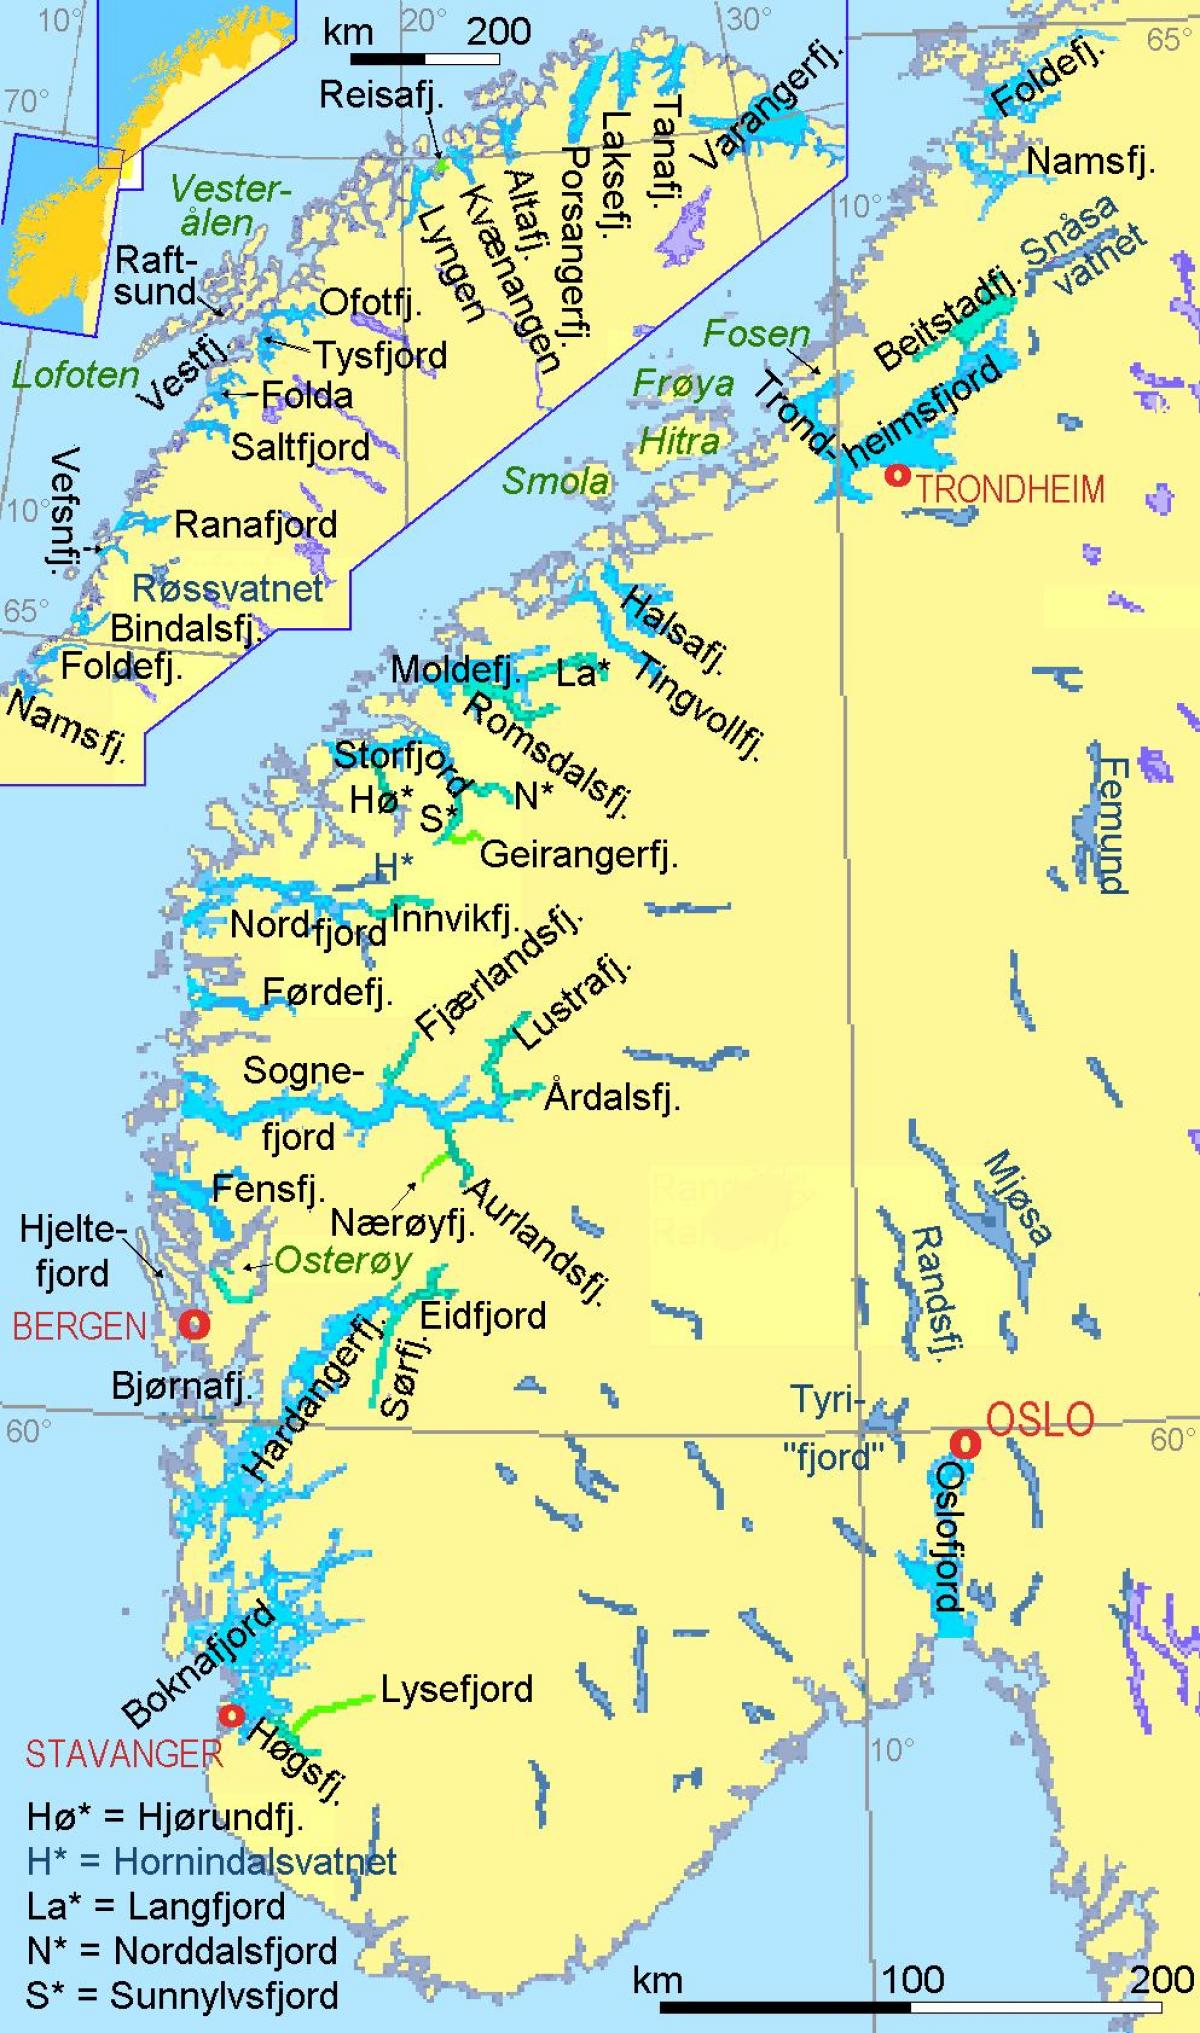 քարտեզ Նորվեգիայի ցույց է տալիս fjords